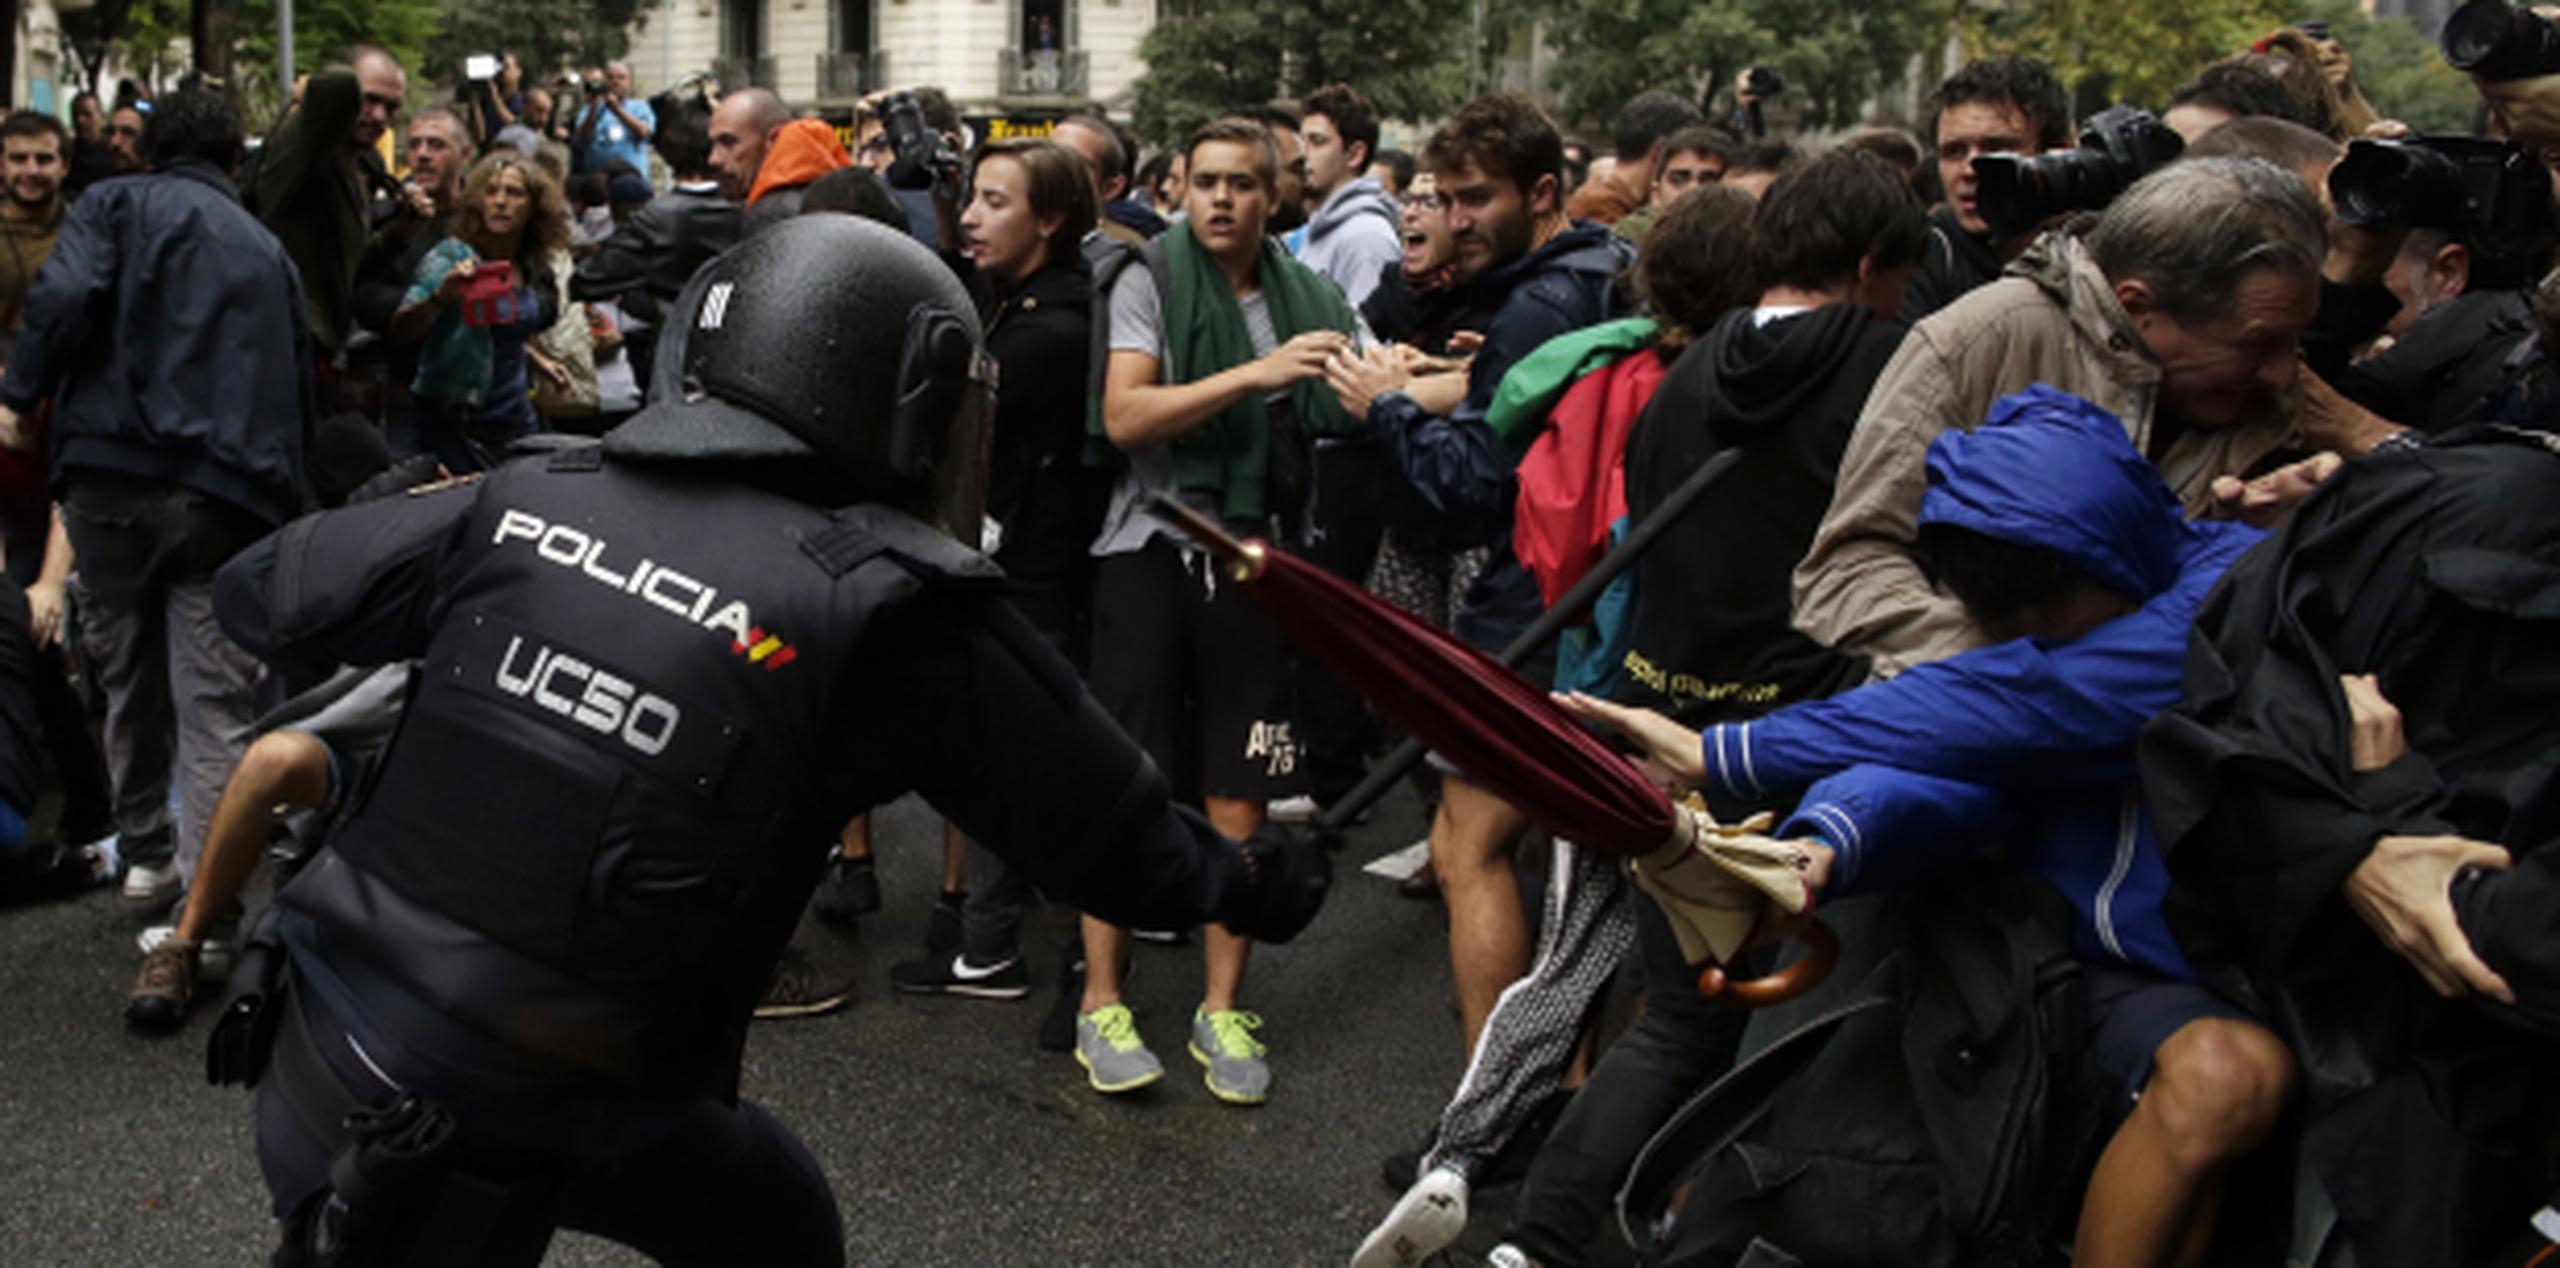 El portavoz del Gobierno catalán, Jordi Turull, atribuyó los heridos y contusionados a la "violencia policial del Estado". (AP)